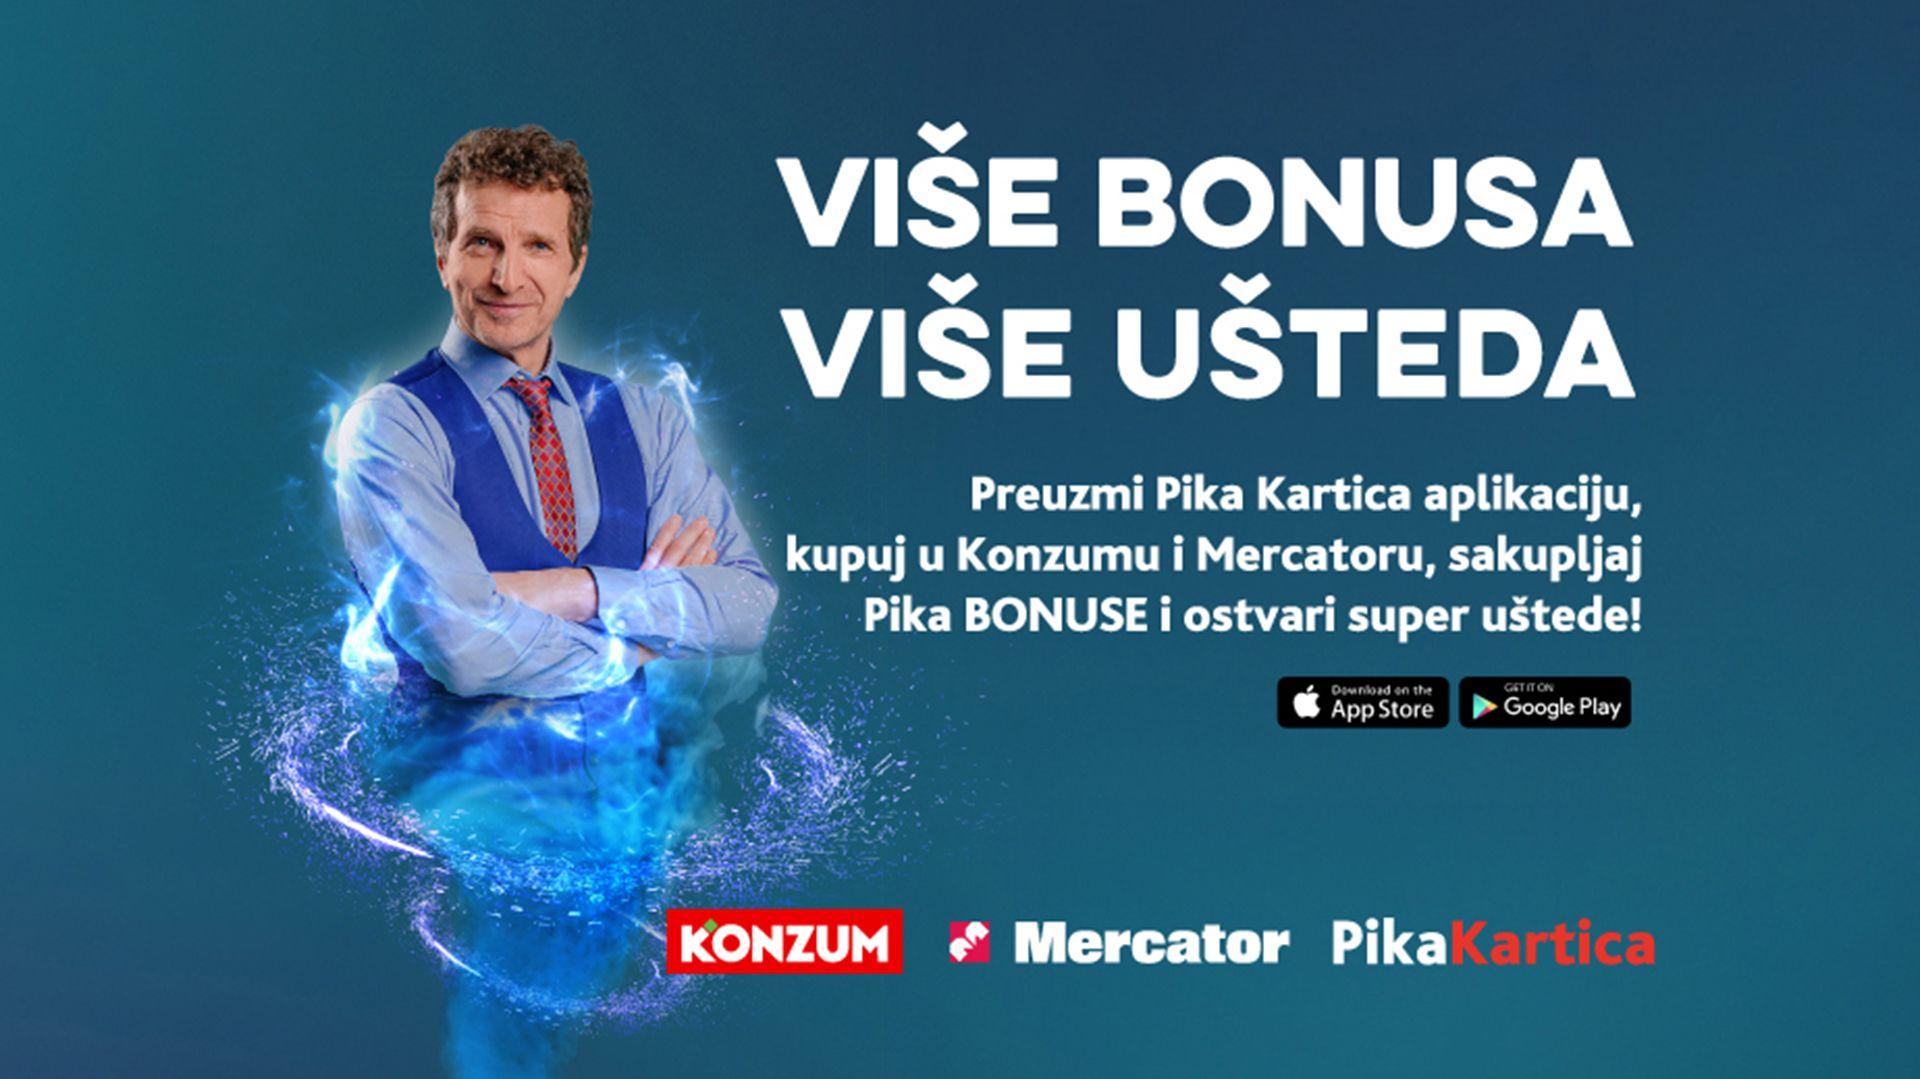 Pika Kartica od sada donosi više bonusa i više ušteda pri kupovini u Konzumu i Mercatoru